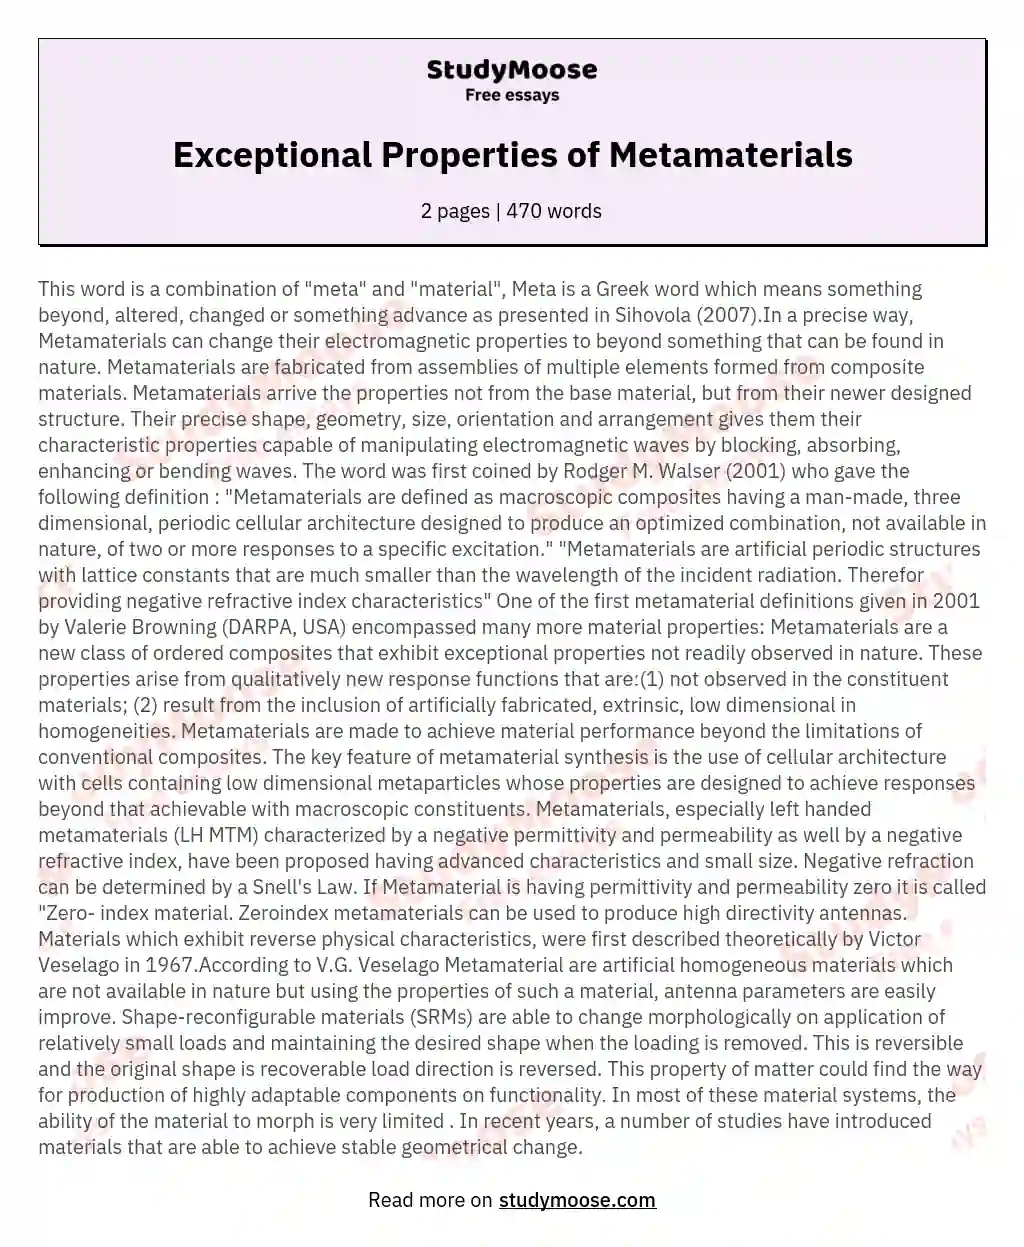 Exceptional Properties of Metamaterials essay